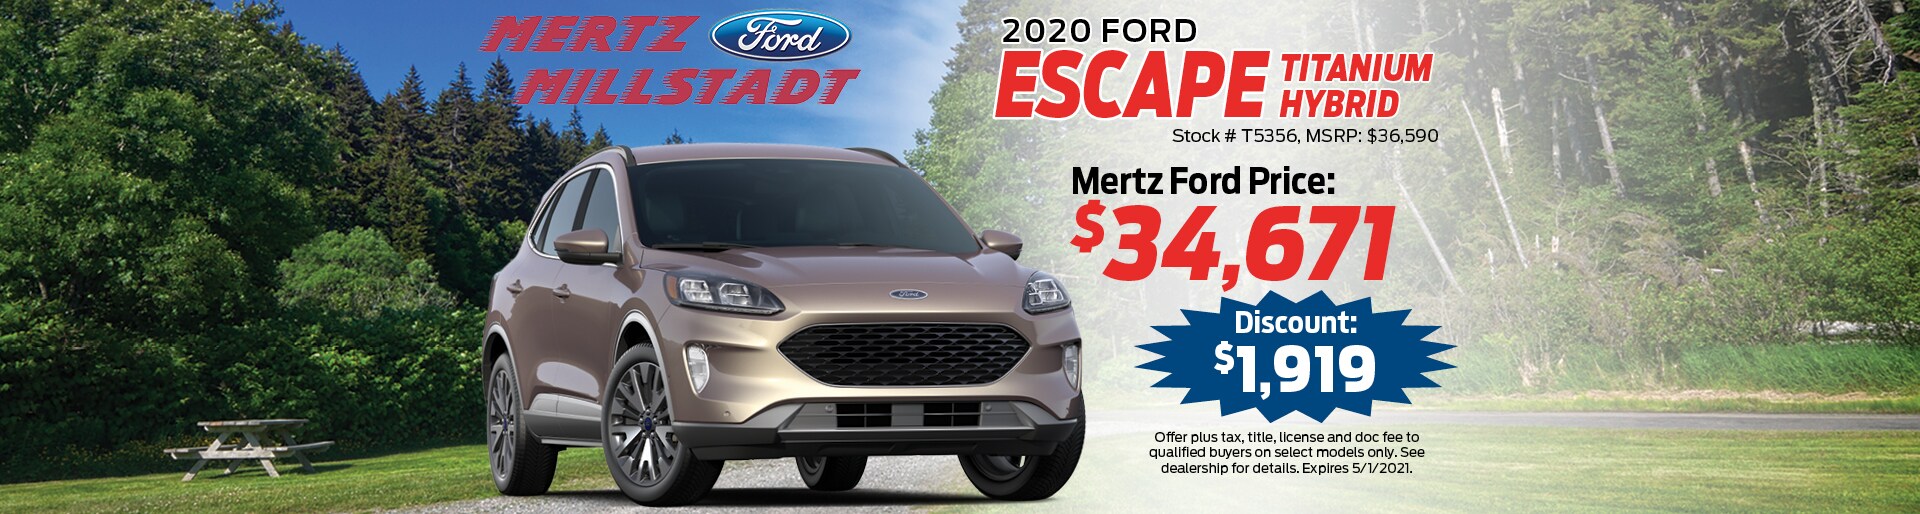 2020 Ford Escape Titanium Hybrid | Mertz ford